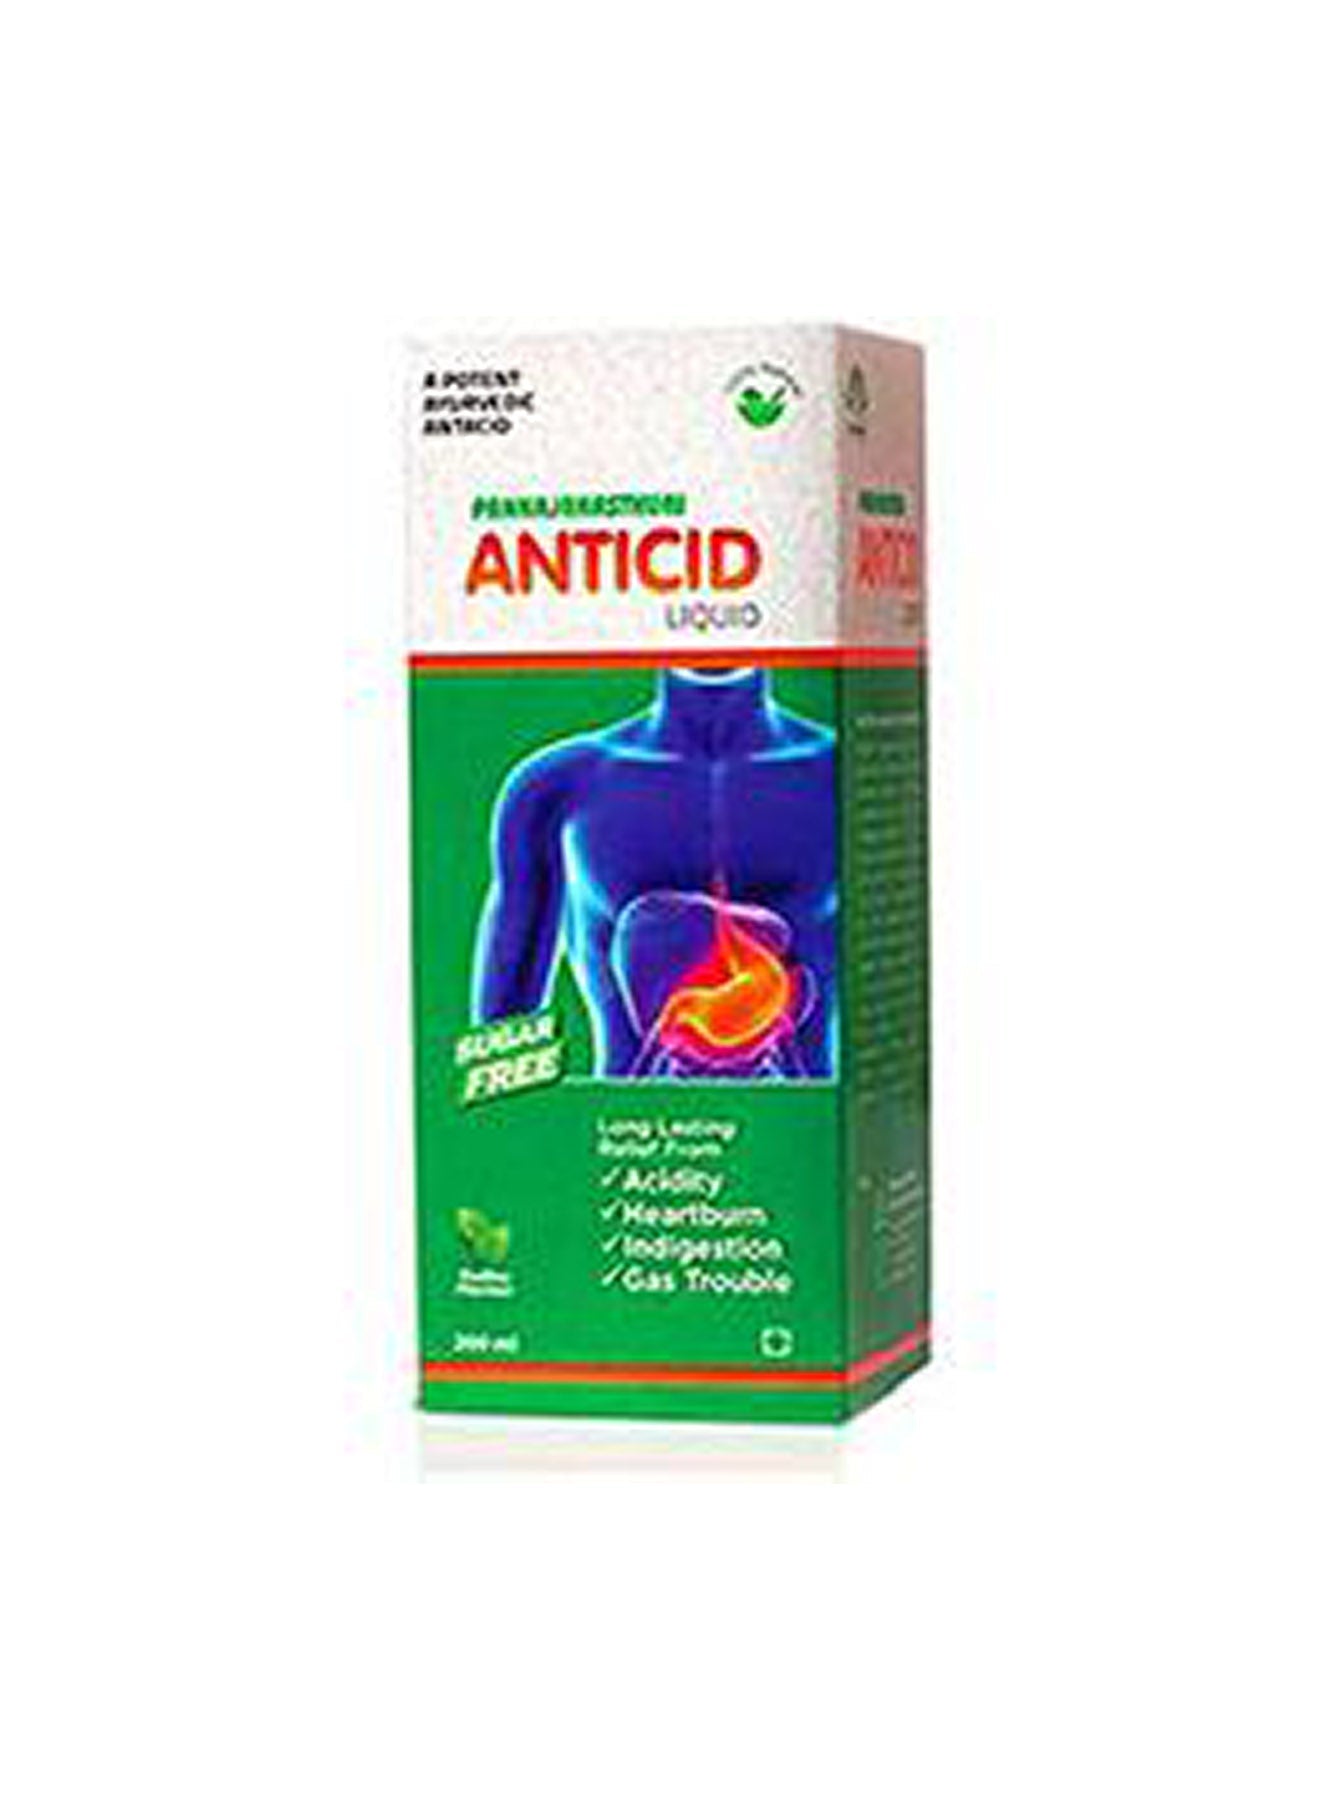 Pankajakasthuri Anticid Liquid Sugar Free 200ml Value Pack of 2 